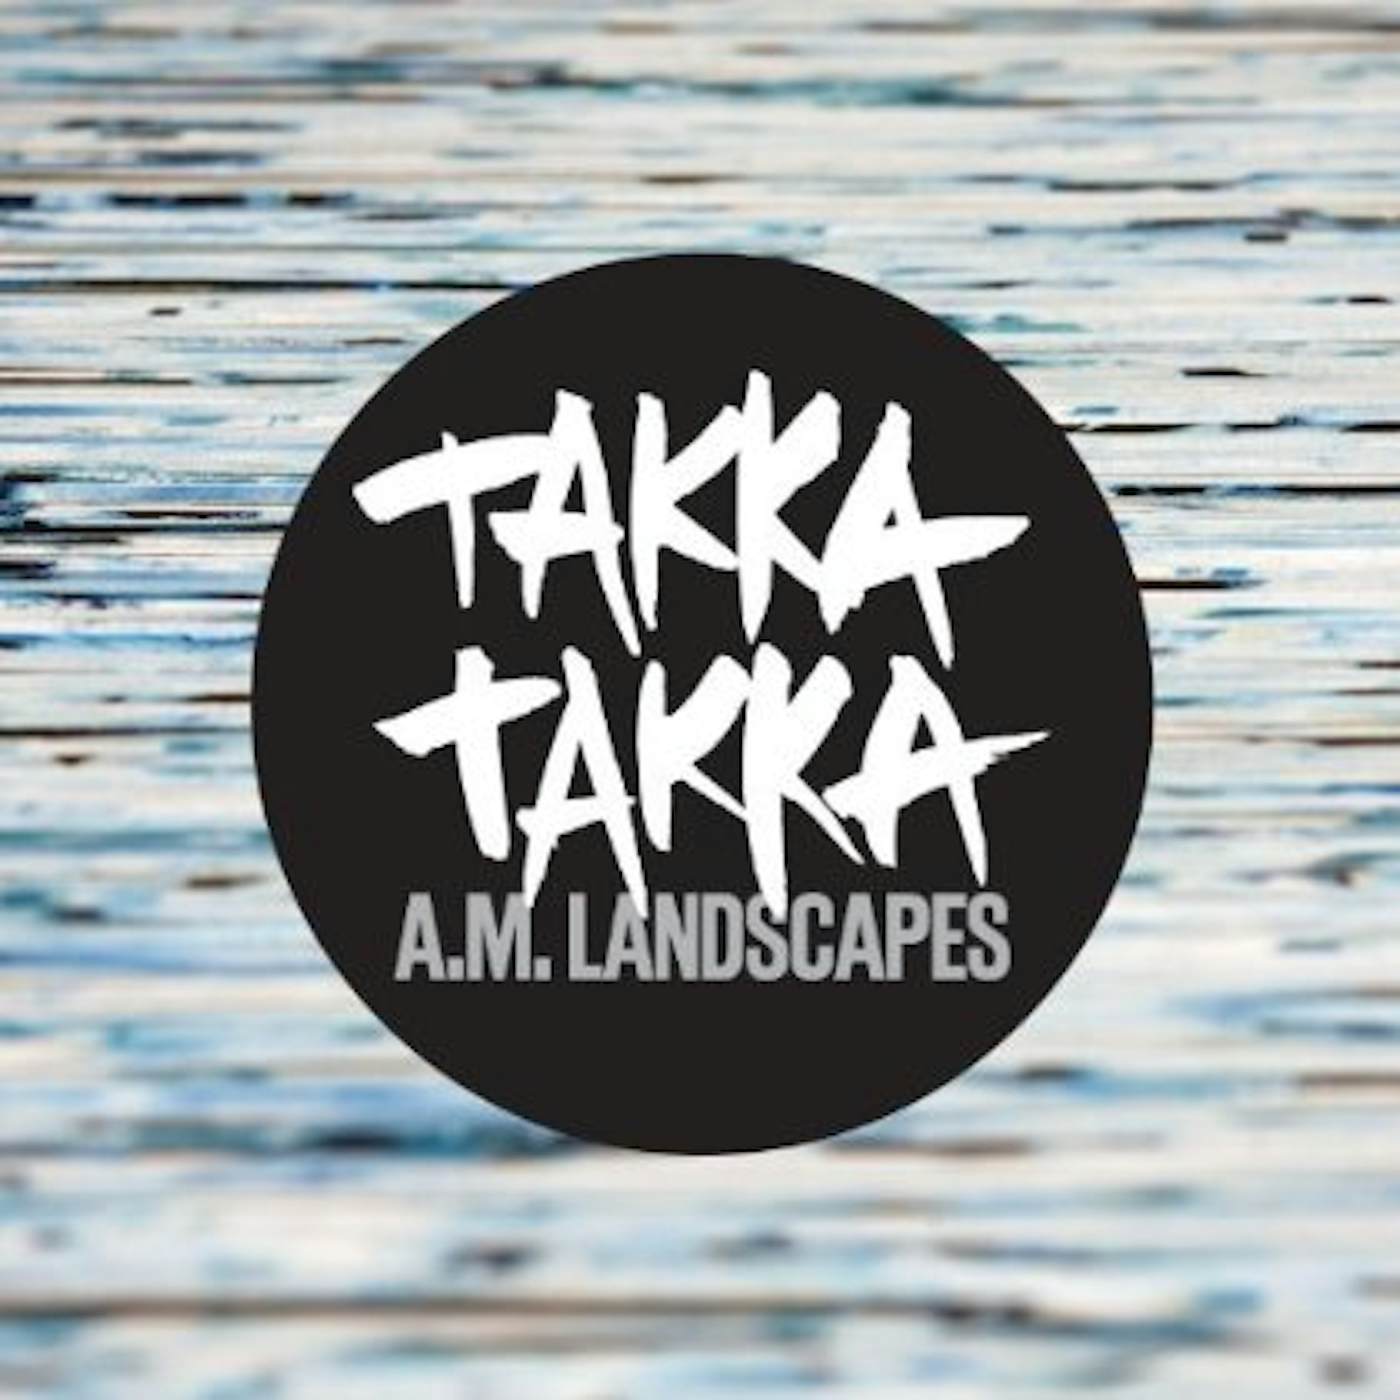 Takka Takka A.M. LANDSCAPES CD